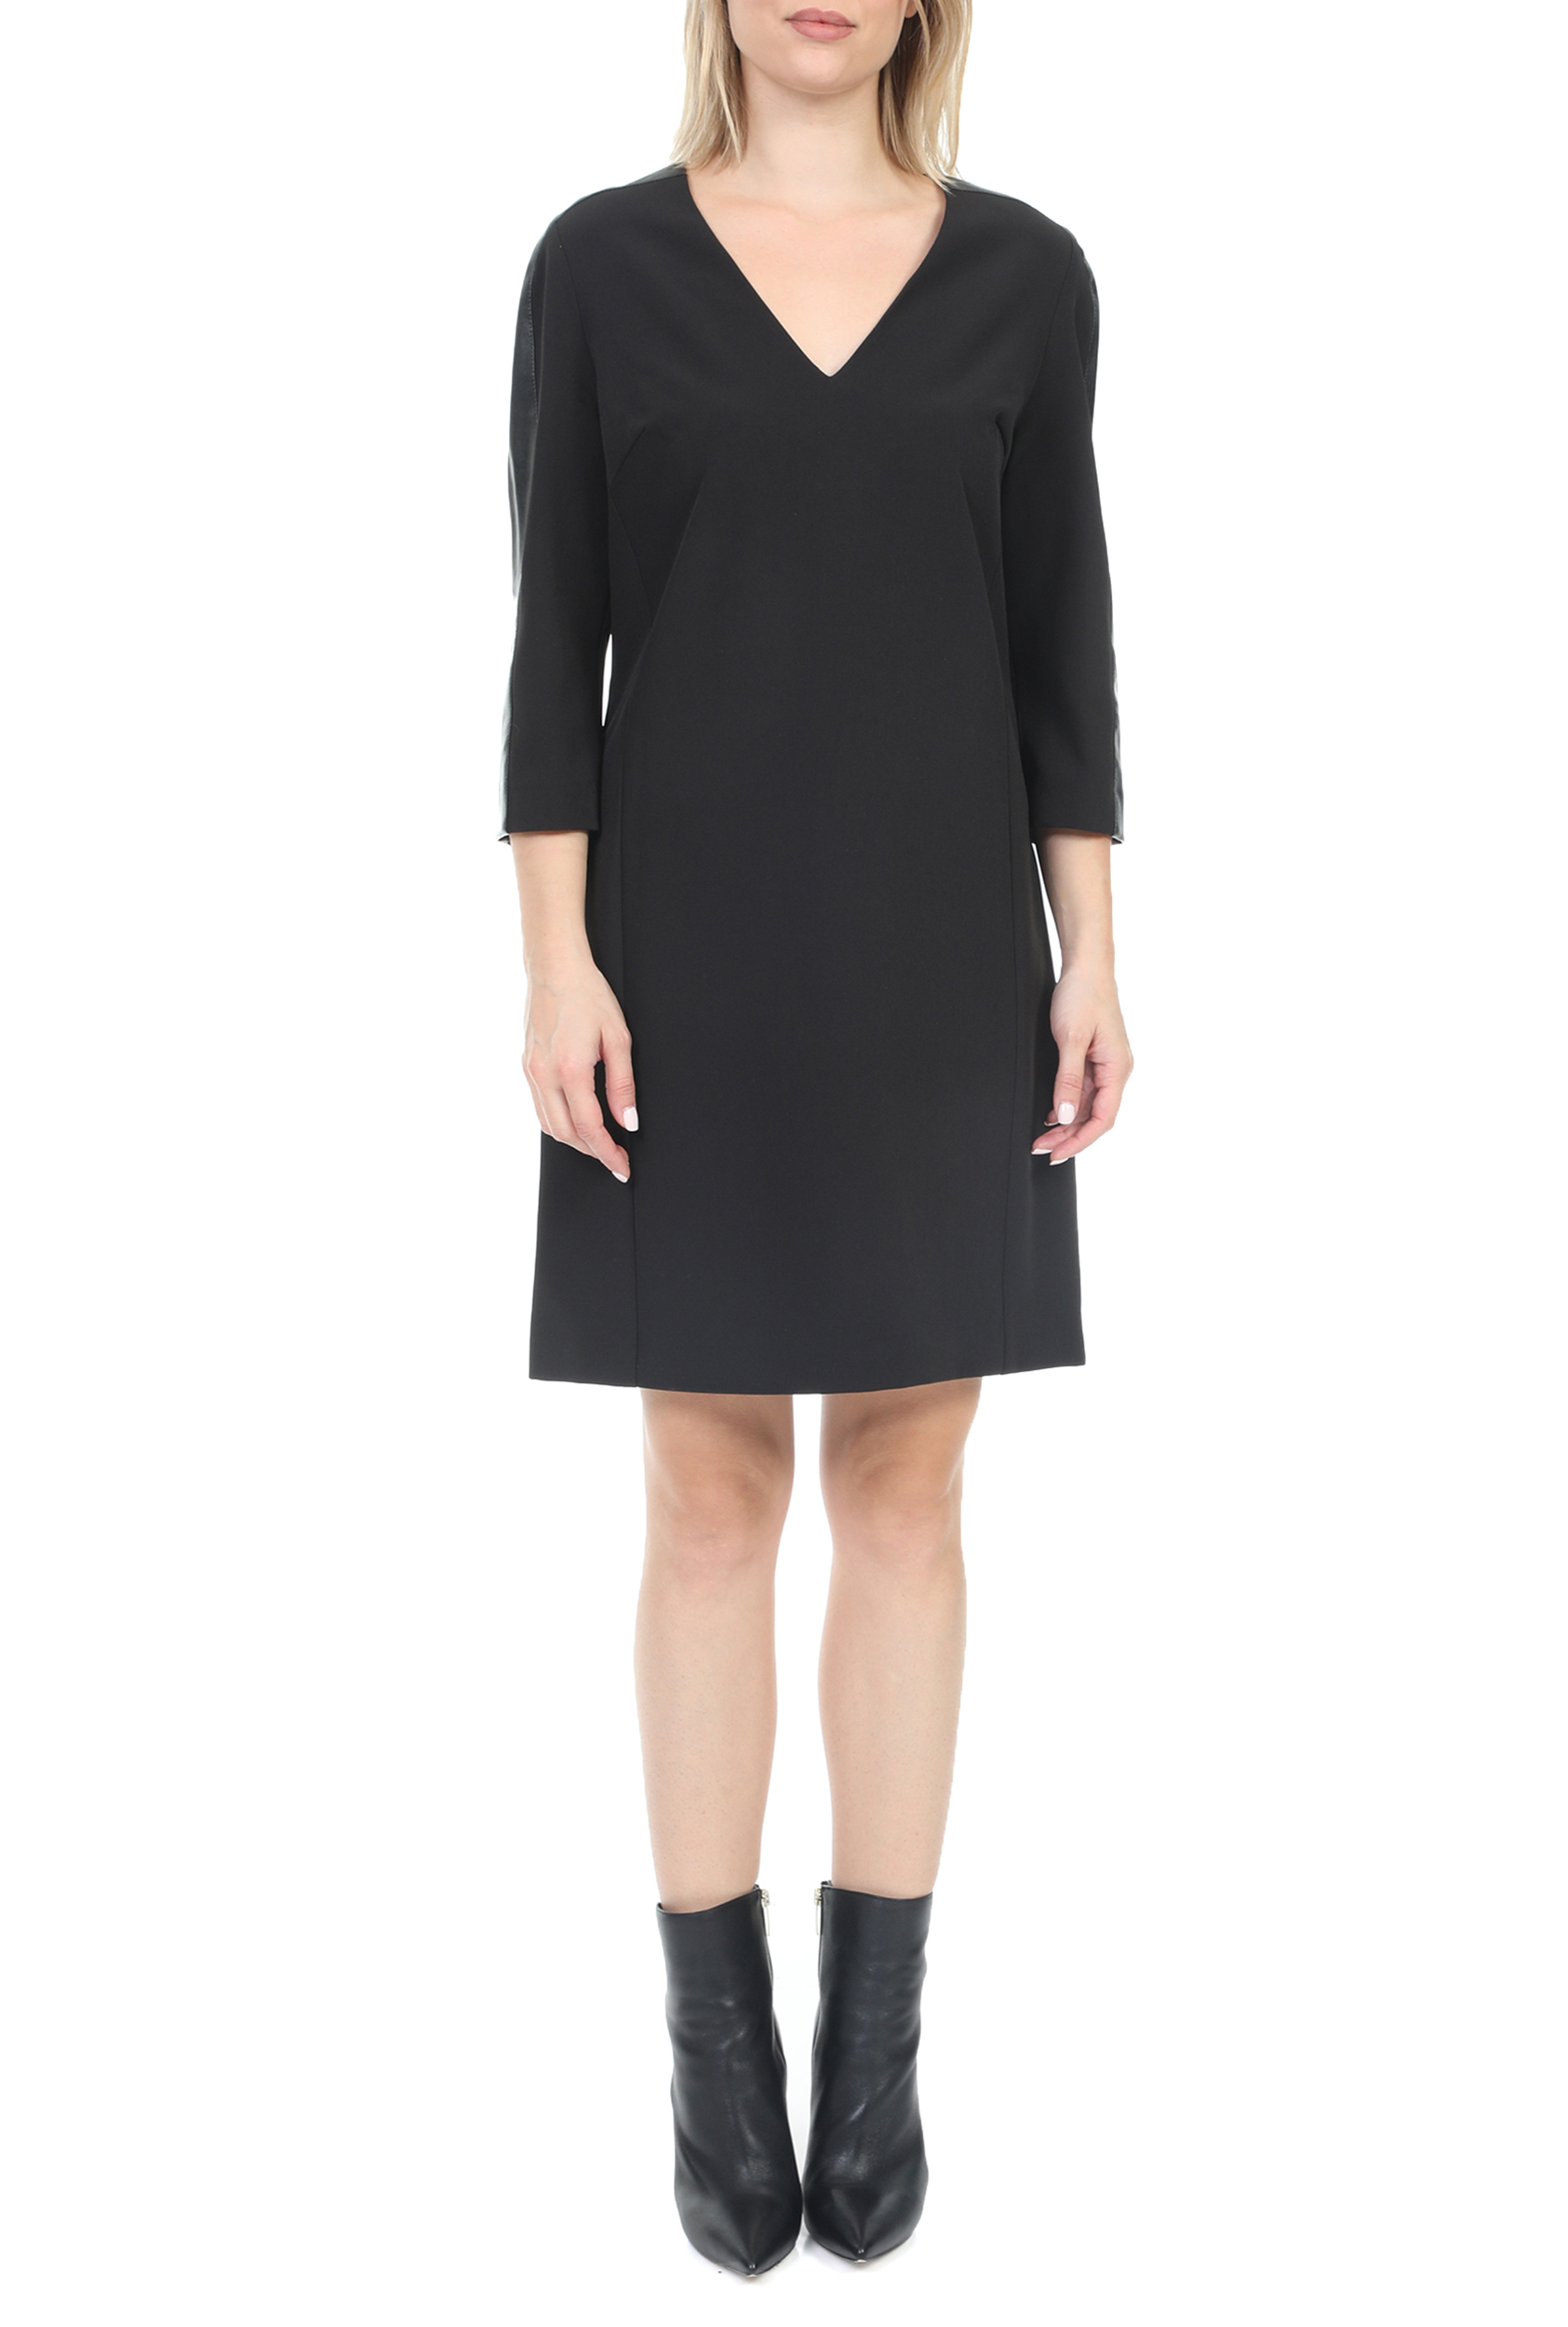 Γυναικεία/Ρούχα/Φόρεματα/Μίνι KOCCA - Γυναικείο mini φόρεμα KOCCA HORIBA μαύρο